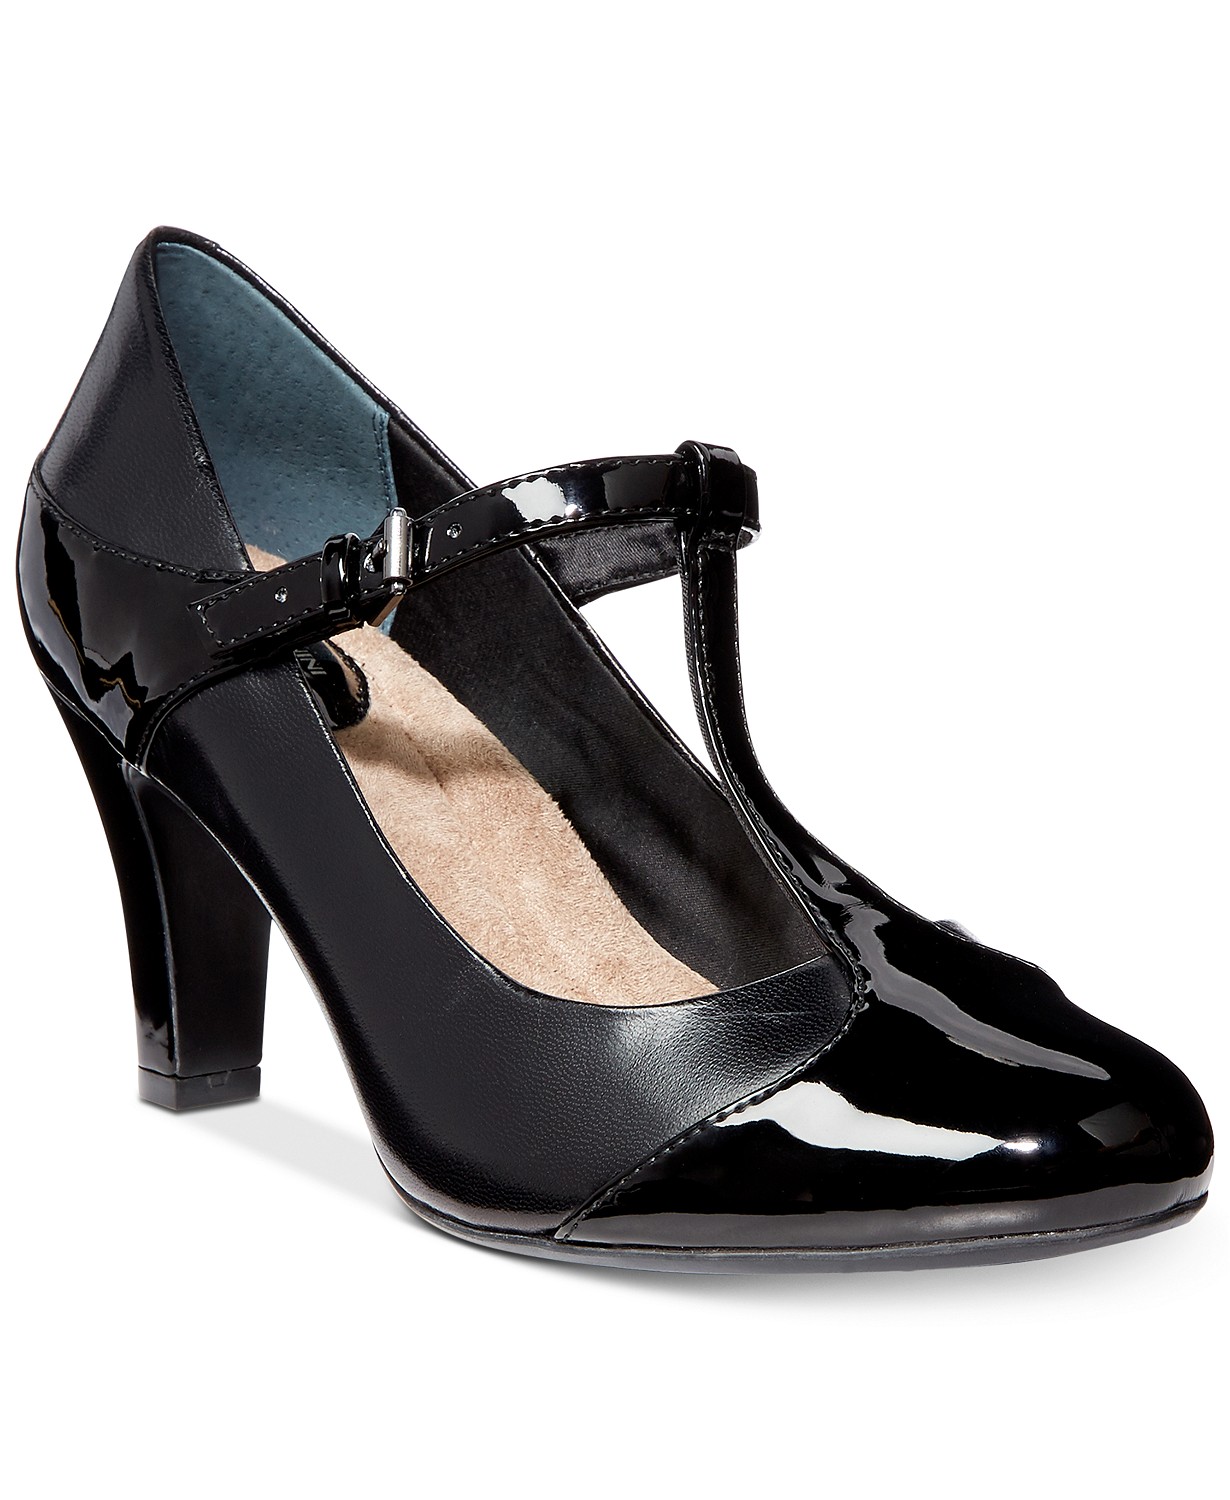 Giani Bernini Womens Vineza Leather Cap Toe, Black leather/patent, Size ...